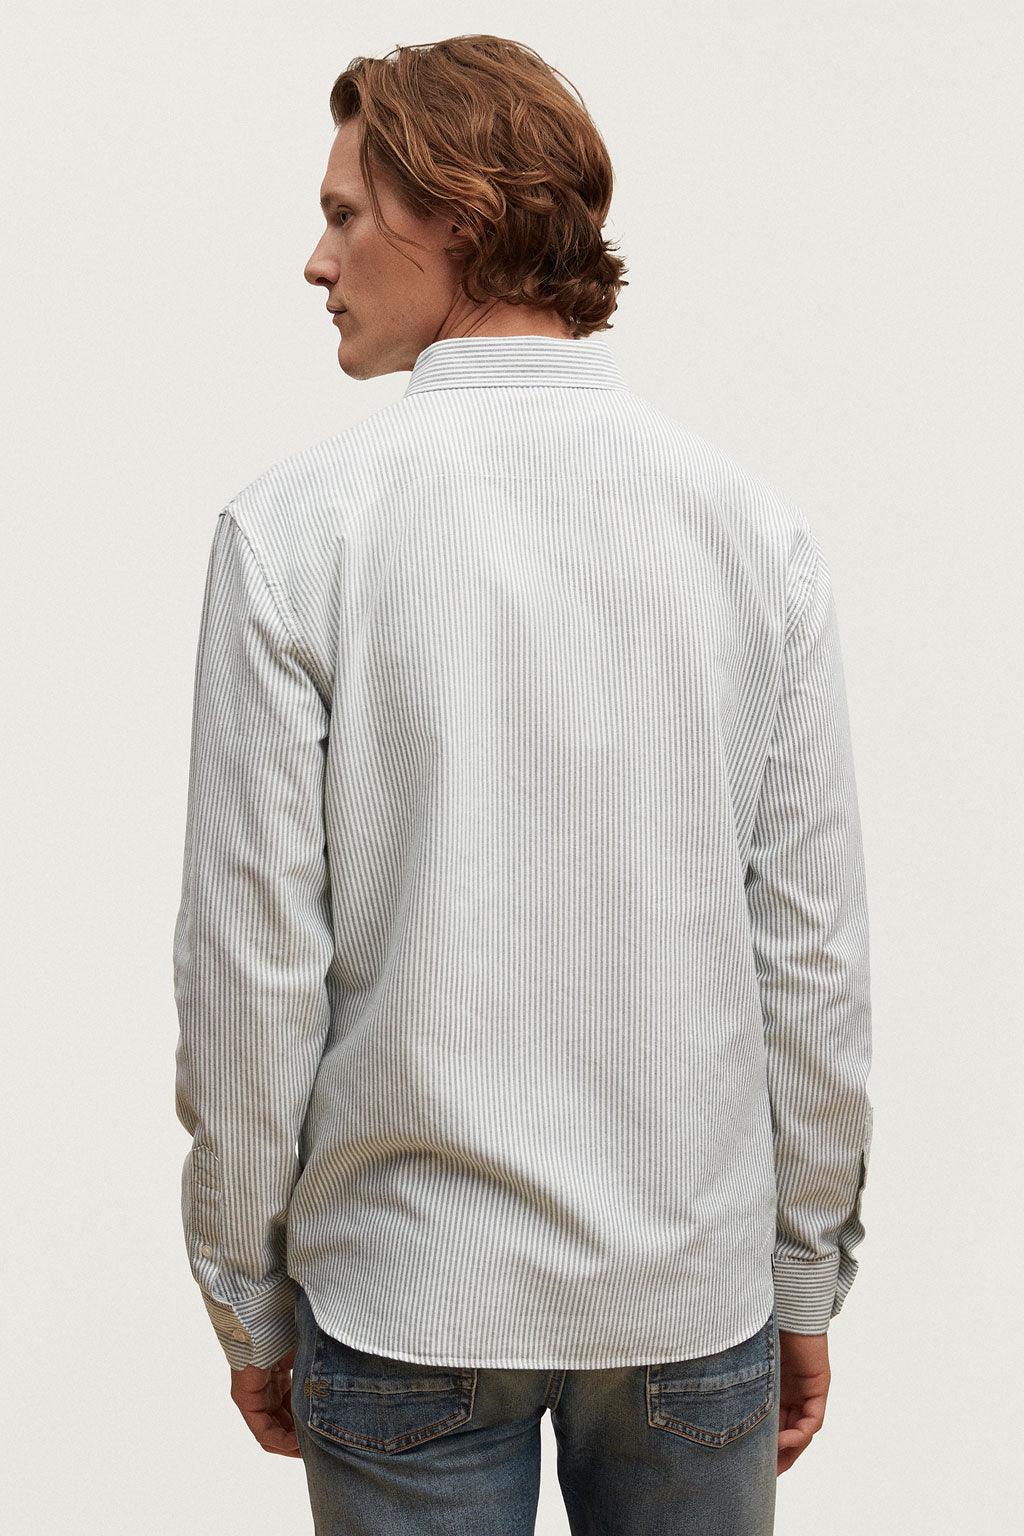 Denham overhemd lange mouw - Big Boss | the menswear concept